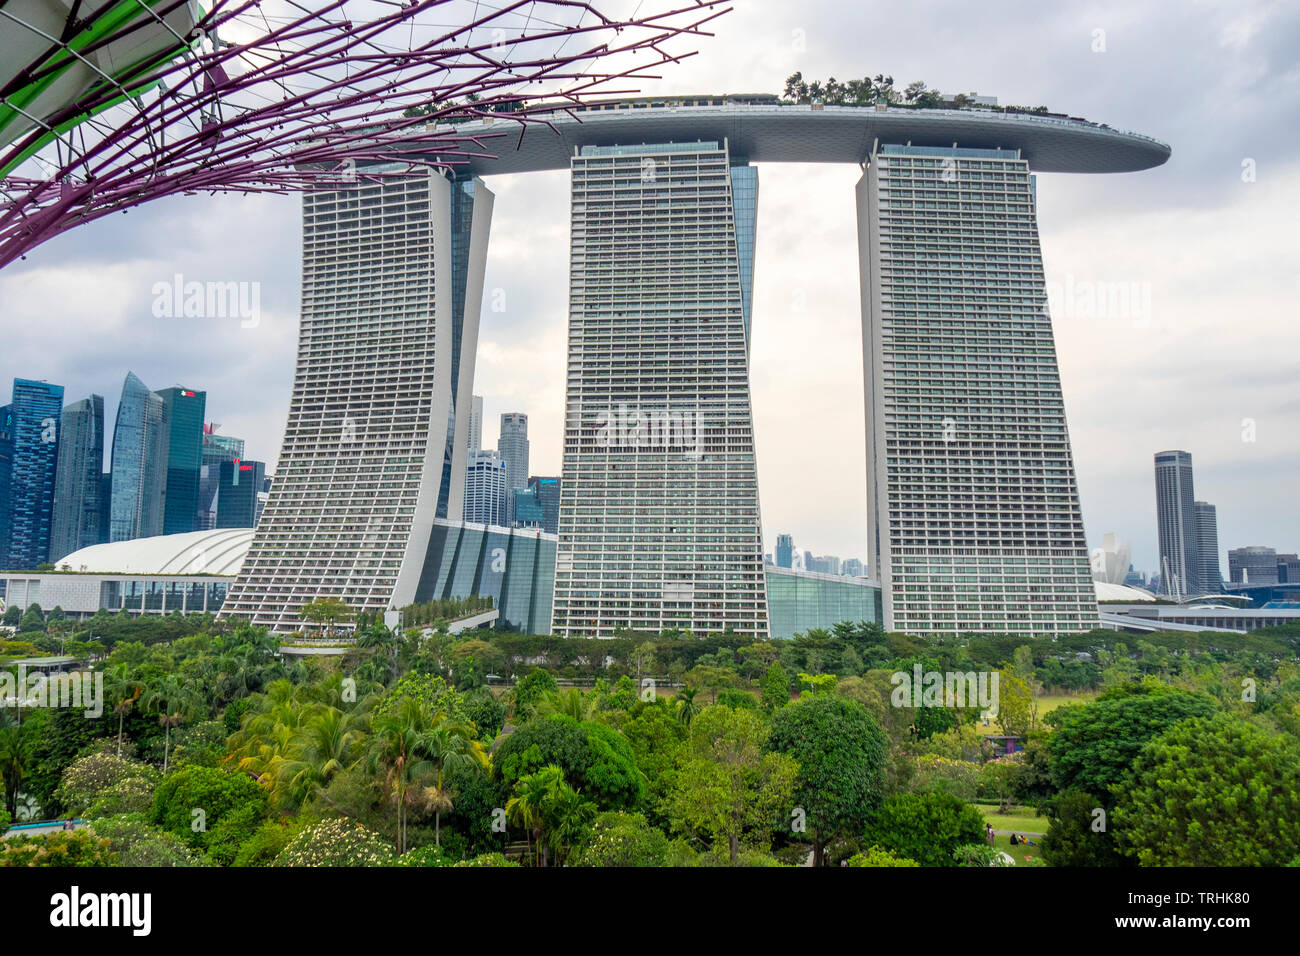 Marina Bay Sands Hotel und Resort mit Swimmingpool auf der Dachterrasse und Stahl gitterkonstruktion Supertreee an Gärten an der Bucht von Singapur Stockfoto